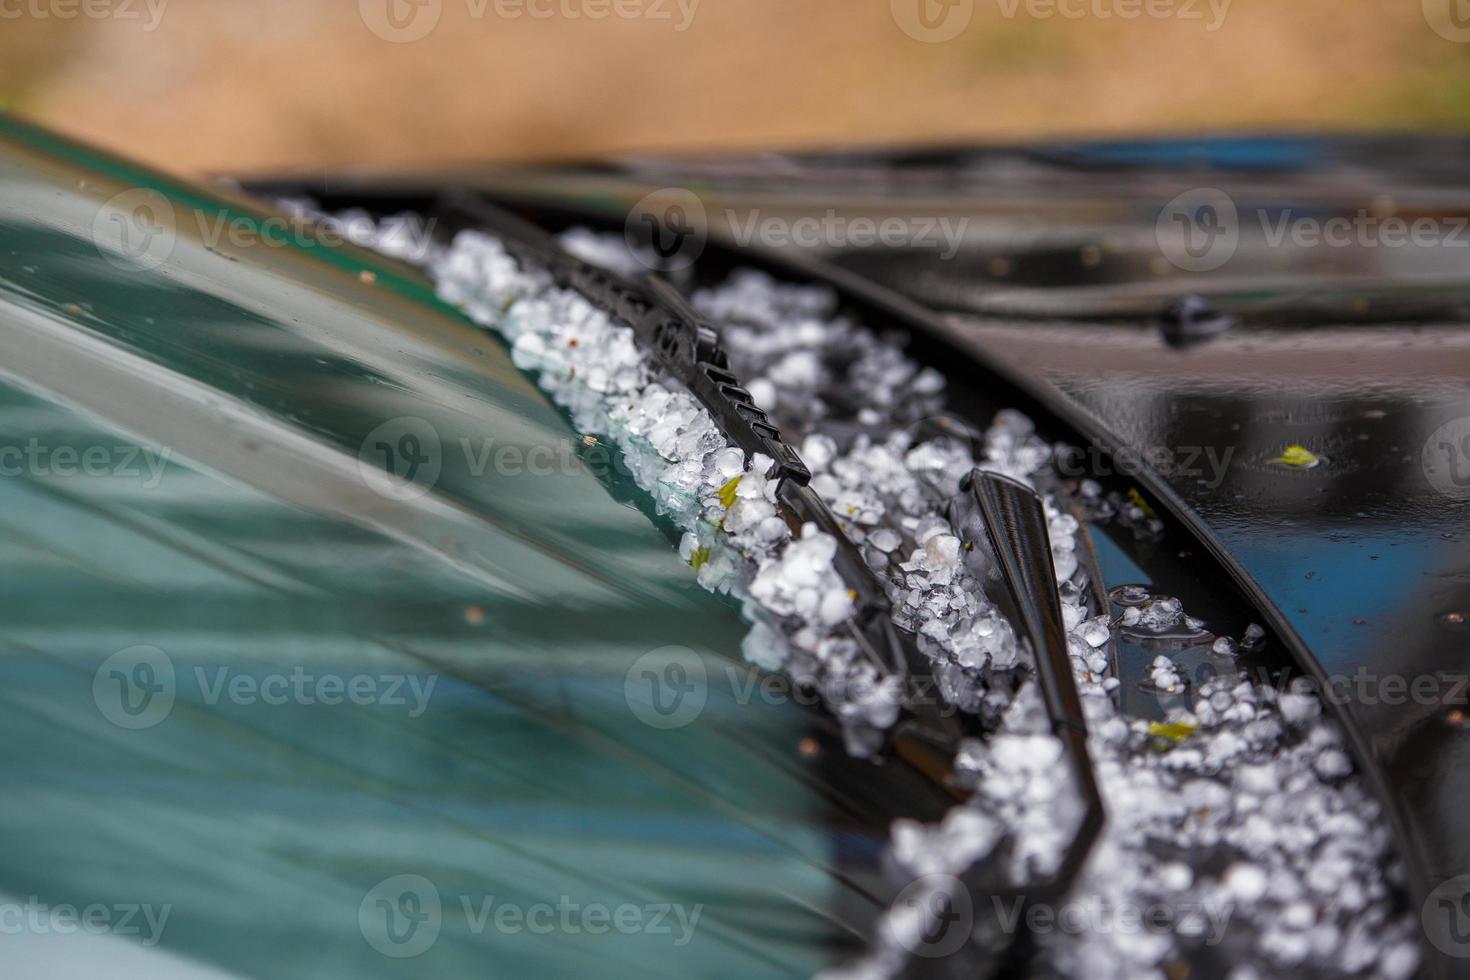 piccolo grandine ghiaccio palle su nero auto cappuccio dopo pesante estate tempesta foto